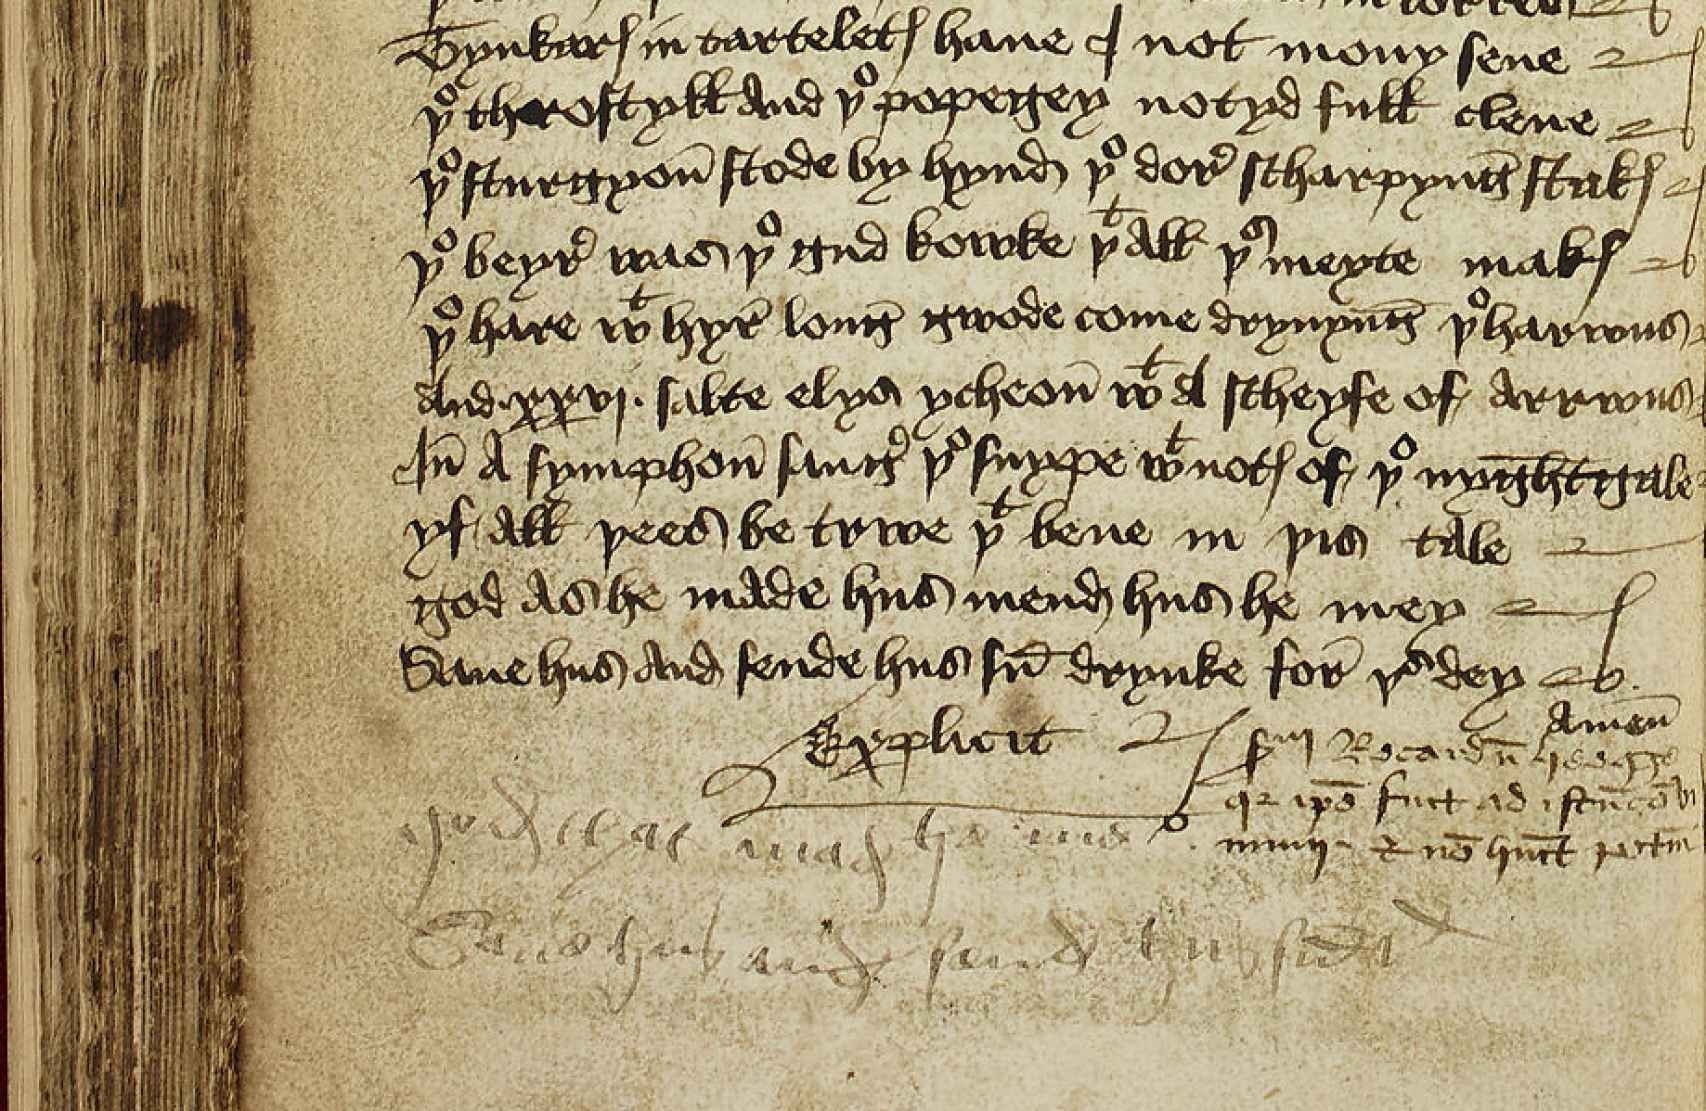 Fragmento del manuscrito de Heege en donde confiesa que estuvo en la fiesta en la que recitó el juglar.